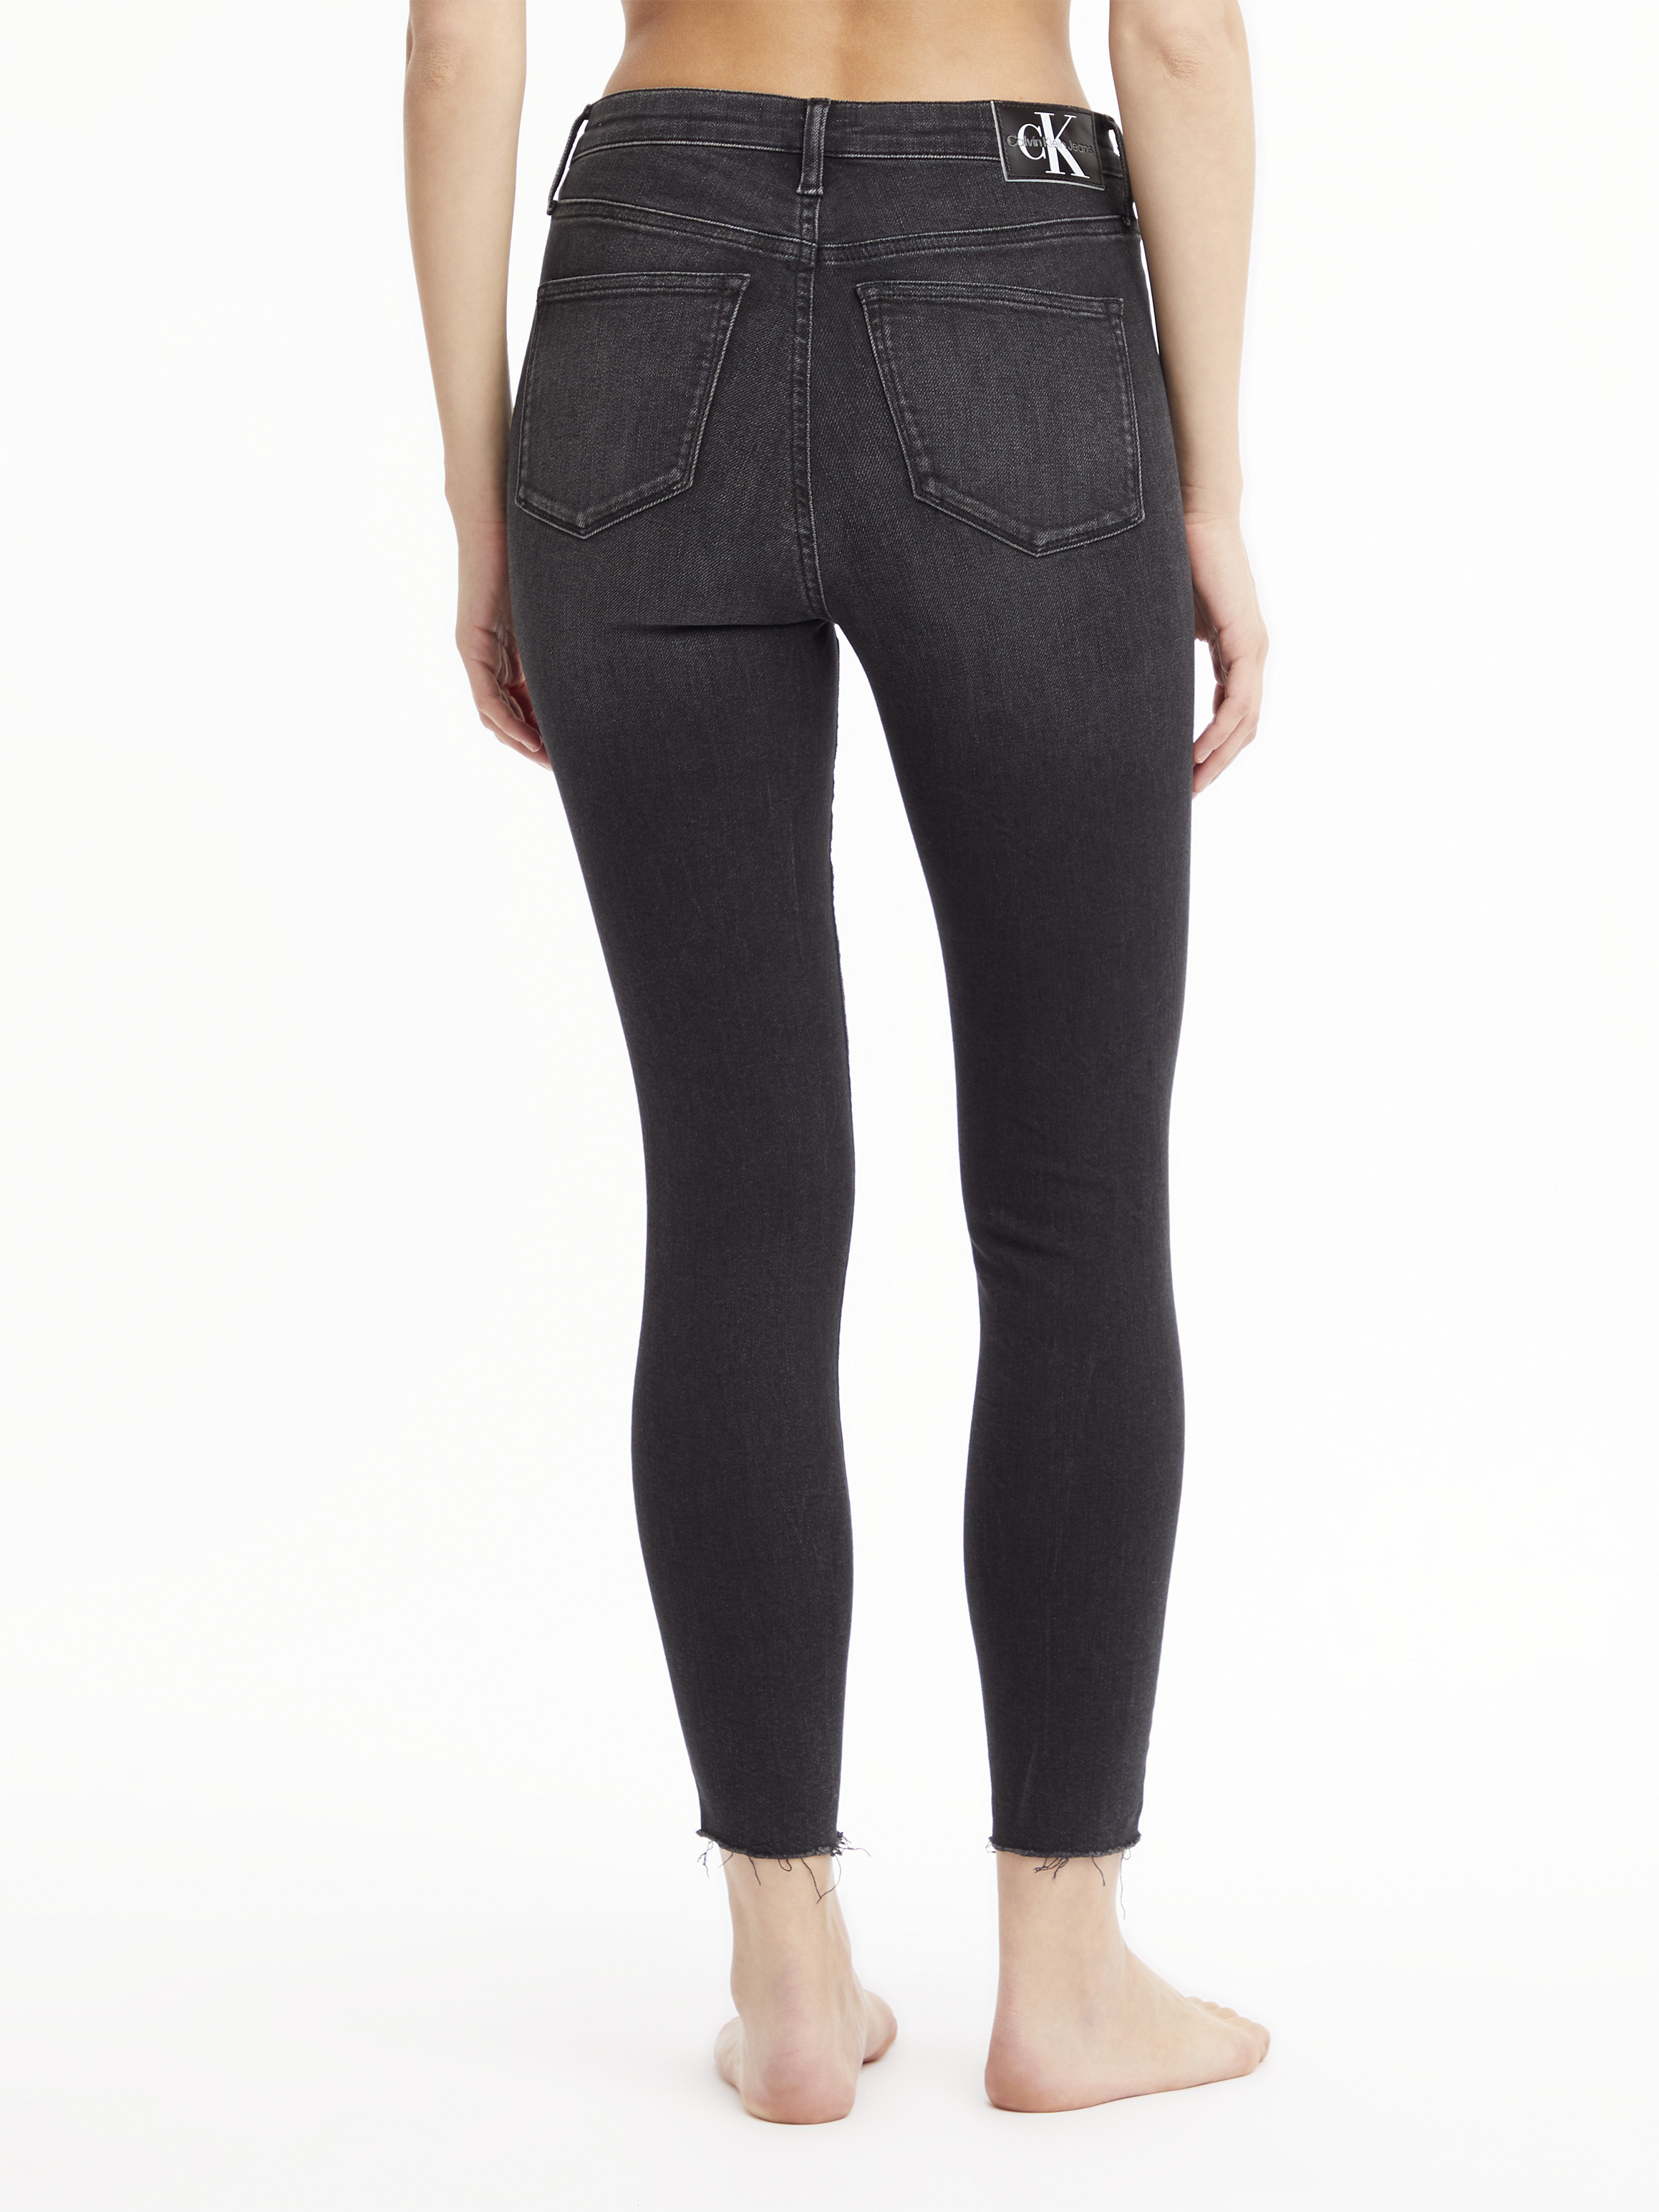 Calvin Klein Jeans - Super skinny five pocket jeans, Black, large image number 6